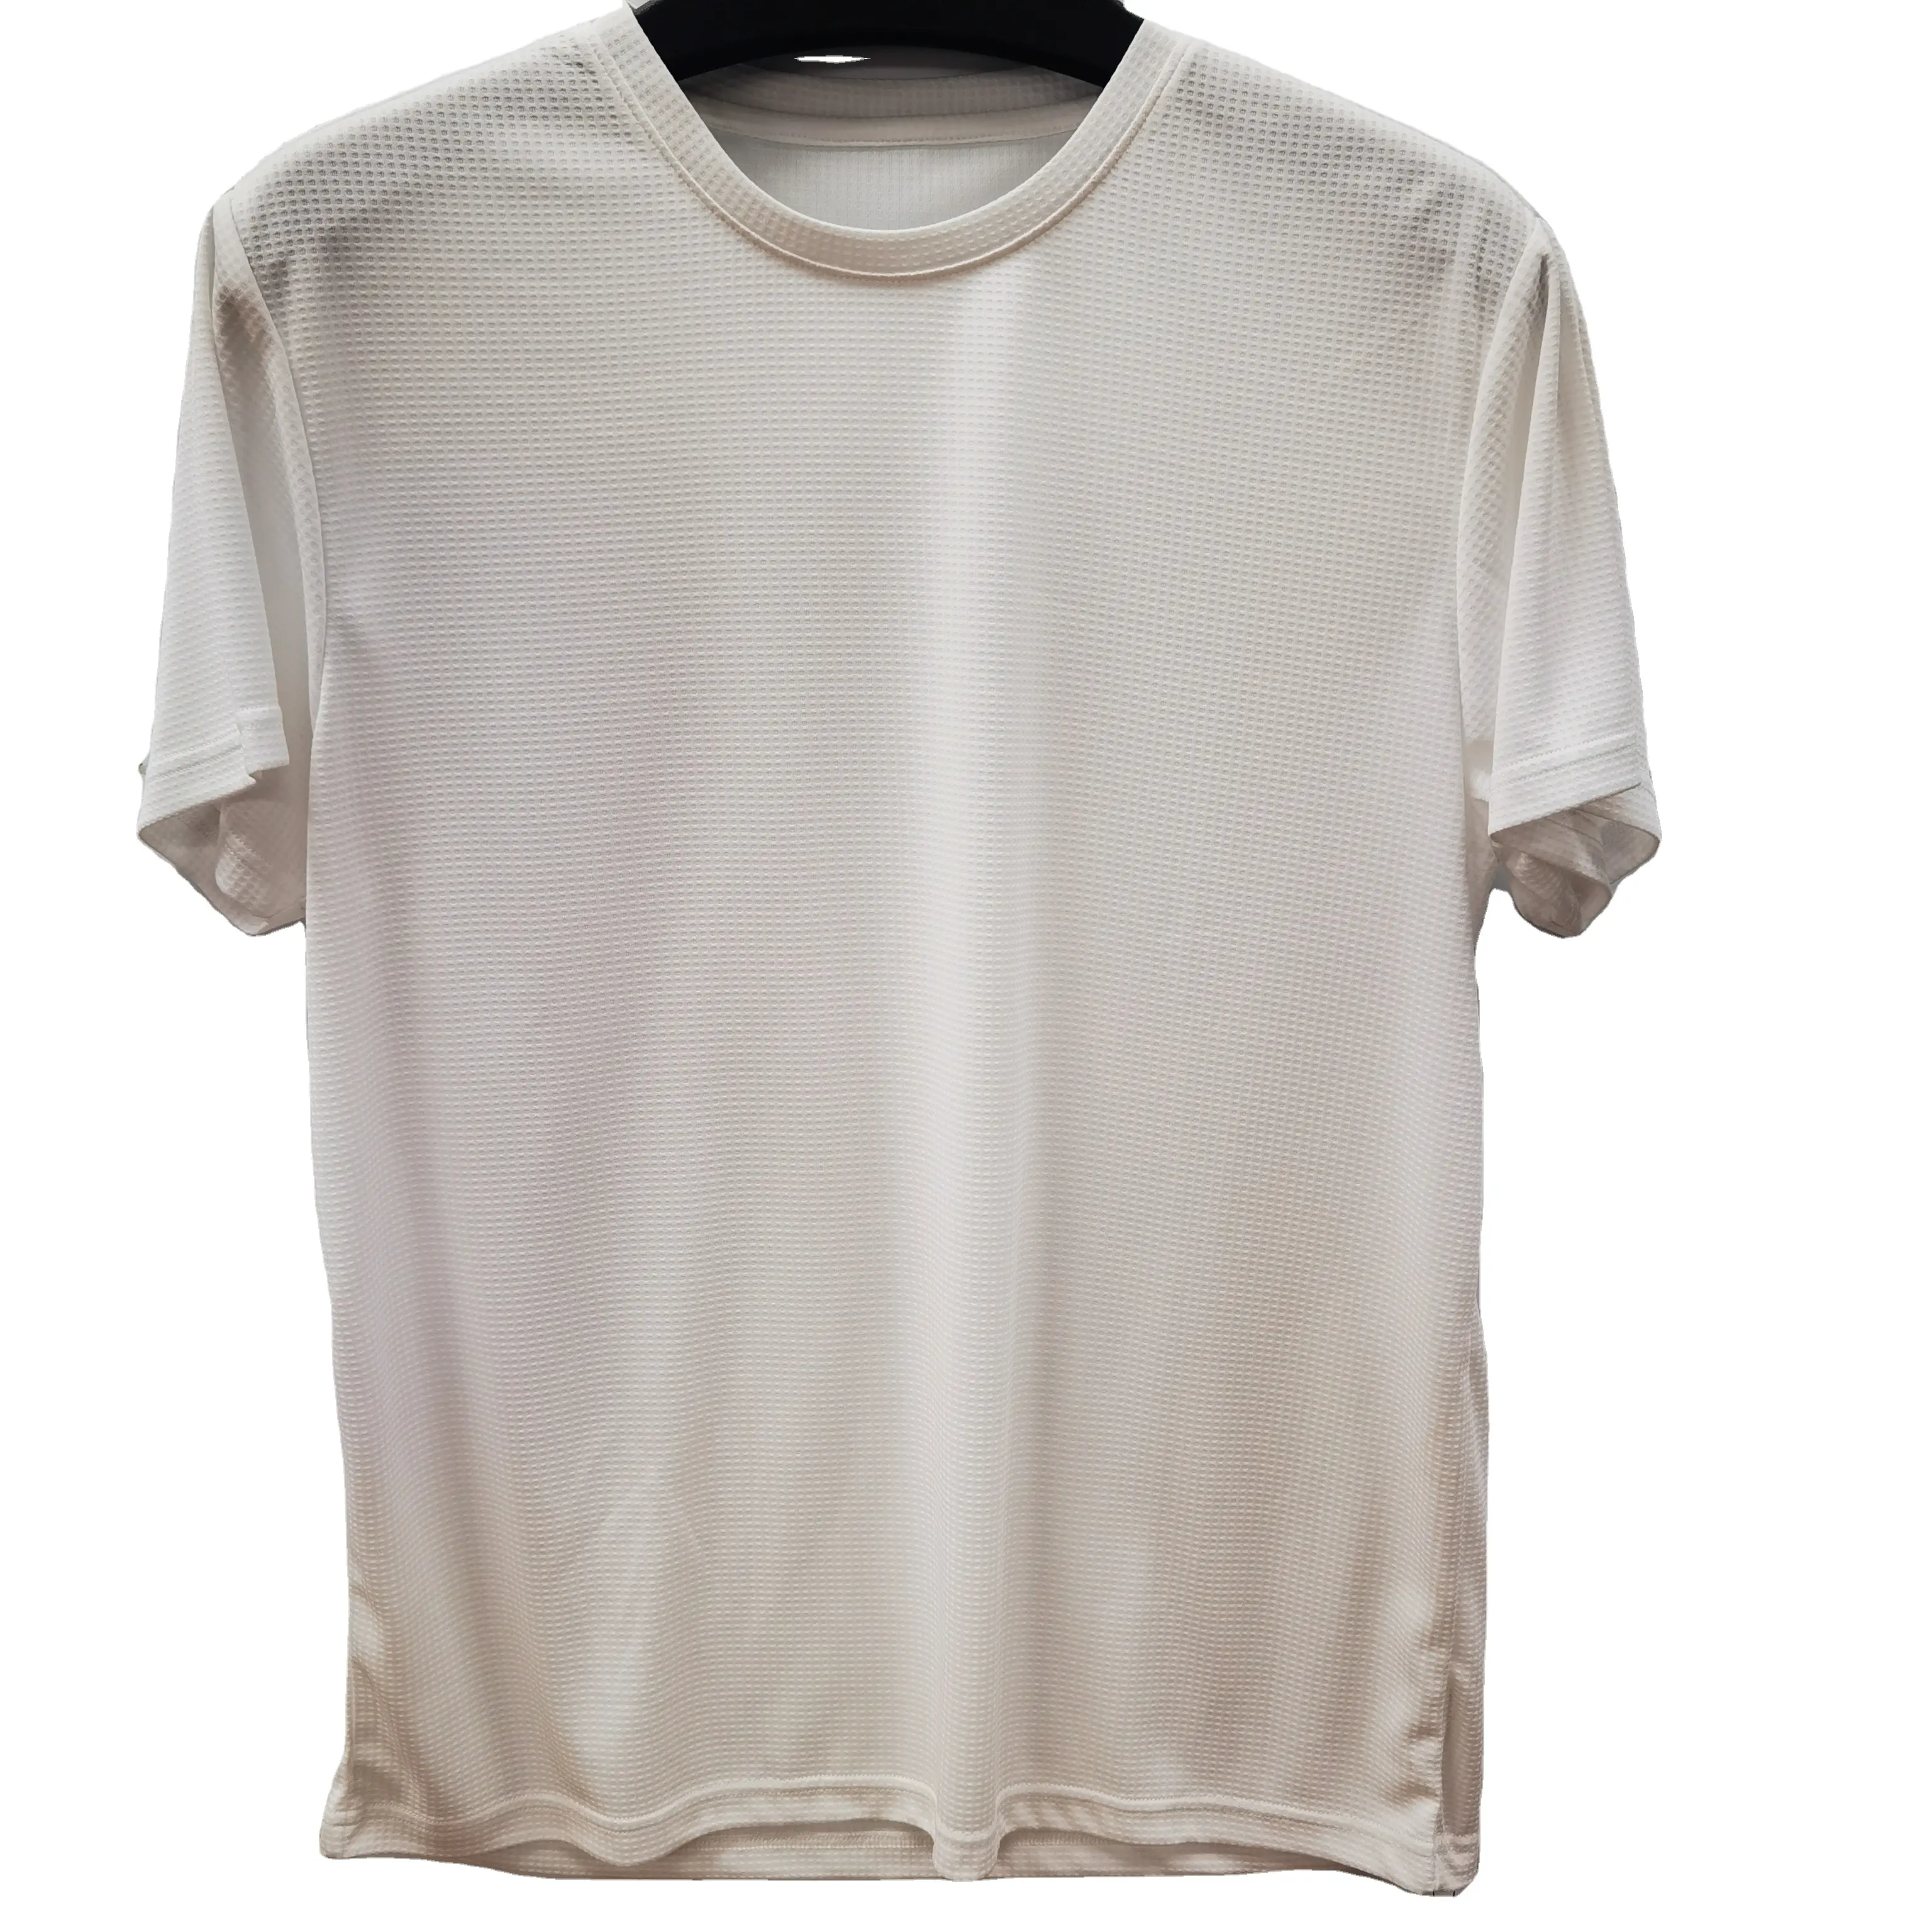 قميص رجالي أبيض للجيم من صانعي القطع الأصلية عالي الجودة يسمح بالتهوية تصميم حسب الطلب